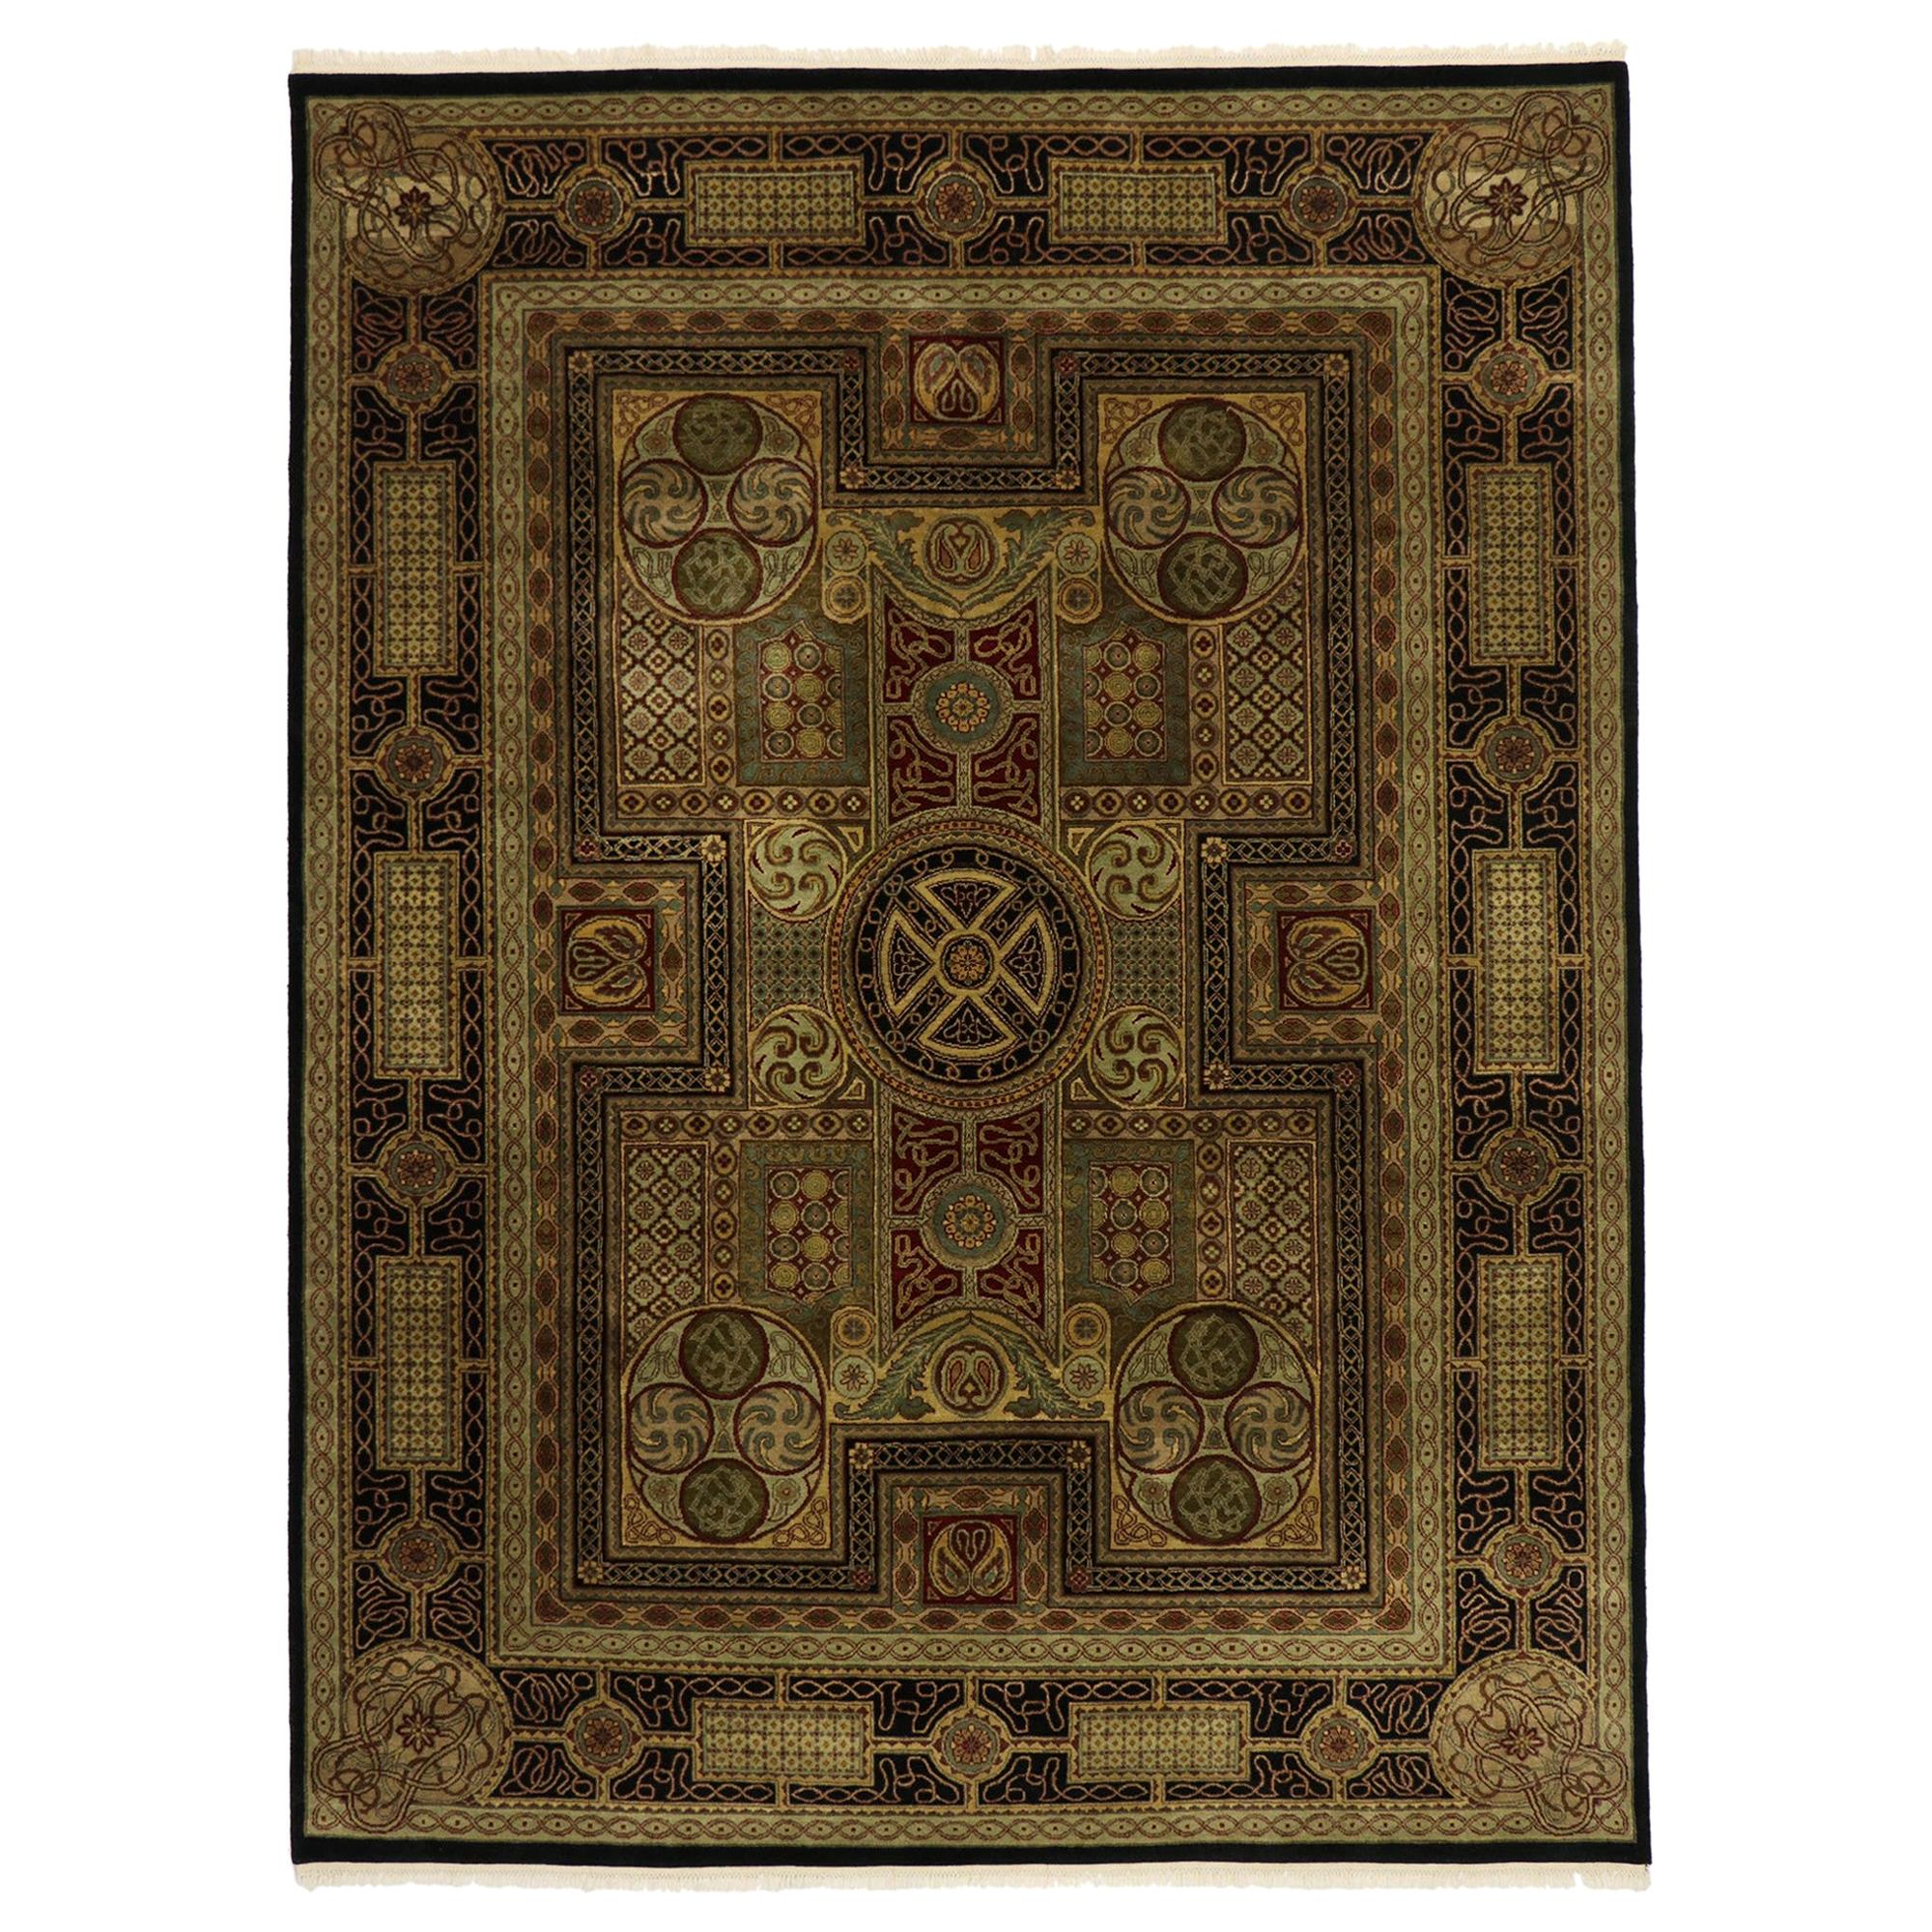 Indischer Teppich im königlichen Barockstil, Vintage